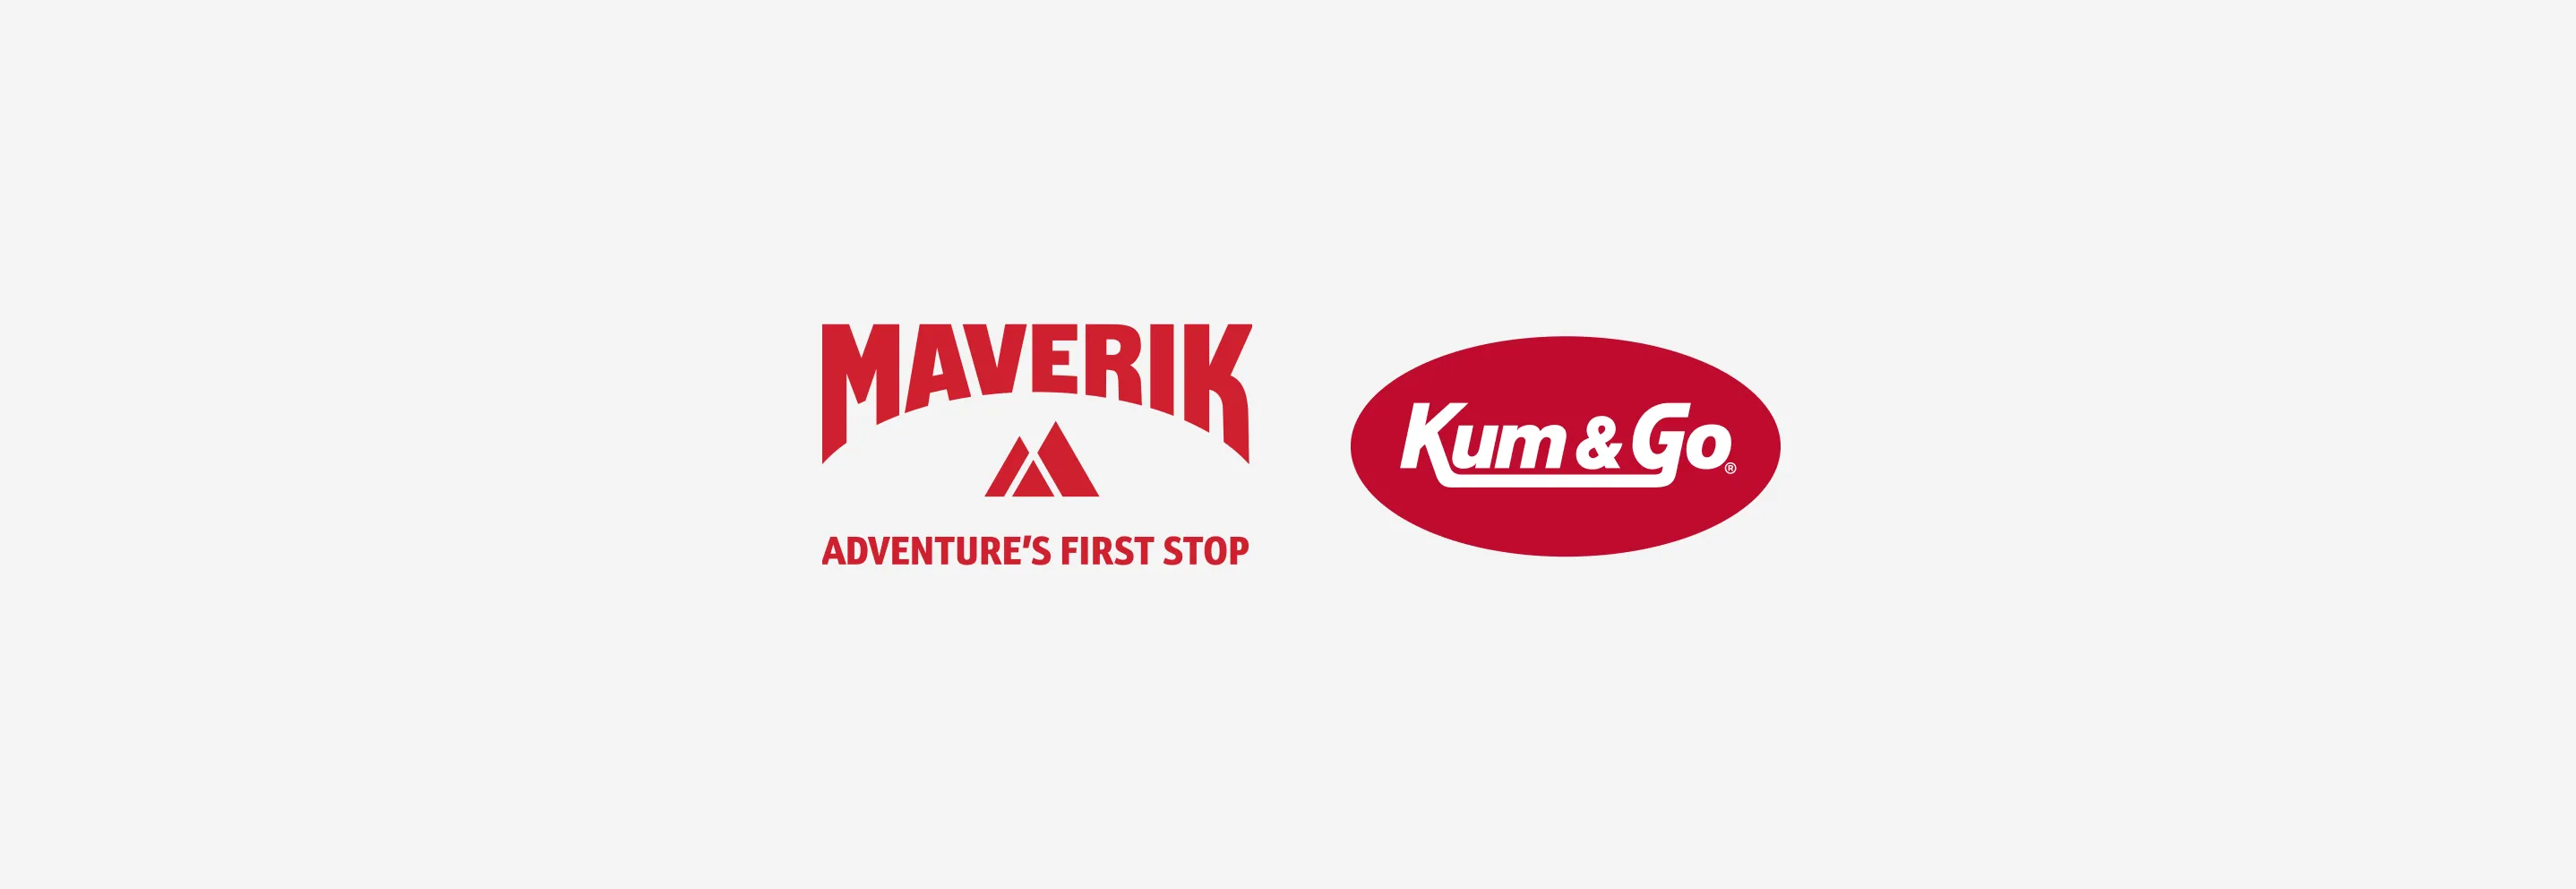 Maverik Completes 30 Rebrands Across Utah and Colorado Springs, Continues Rebranding in Denver